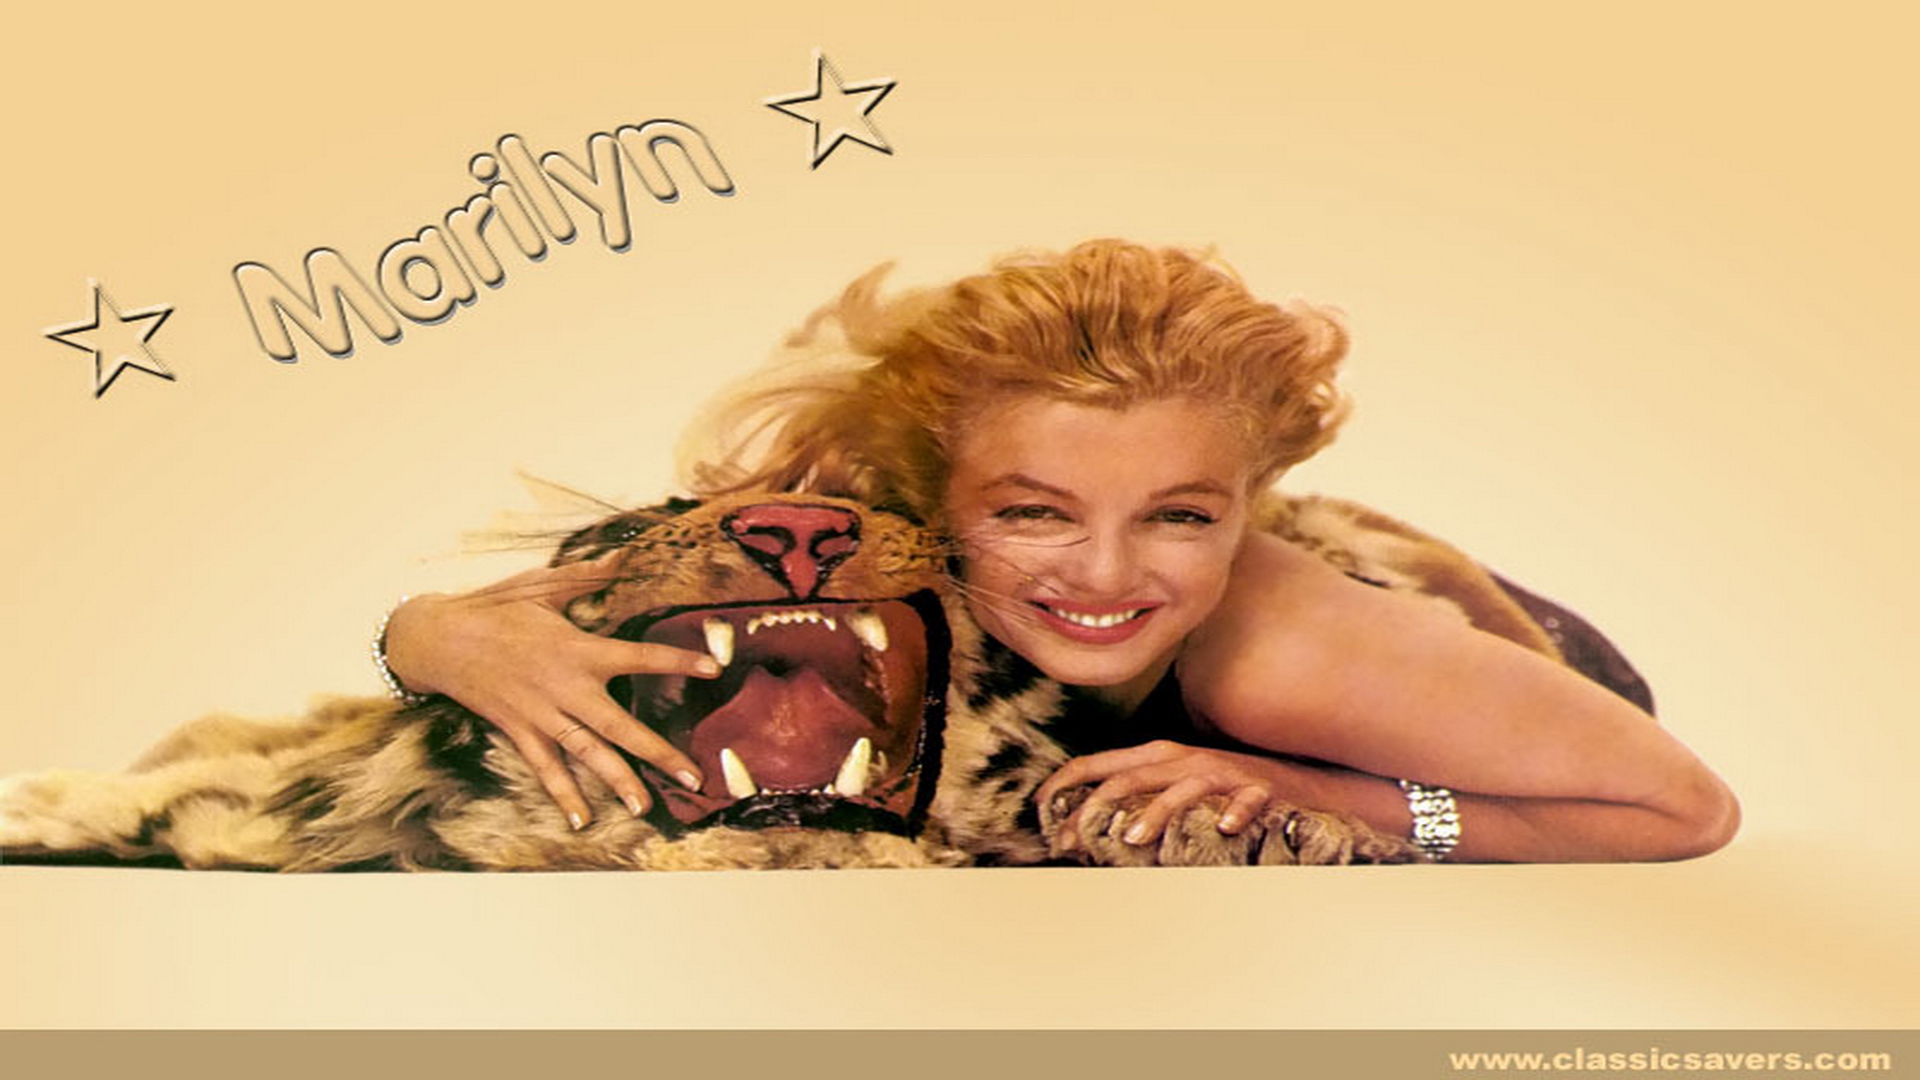 Marilyn Monroe Desktop Image Search Woool998 Info Engine